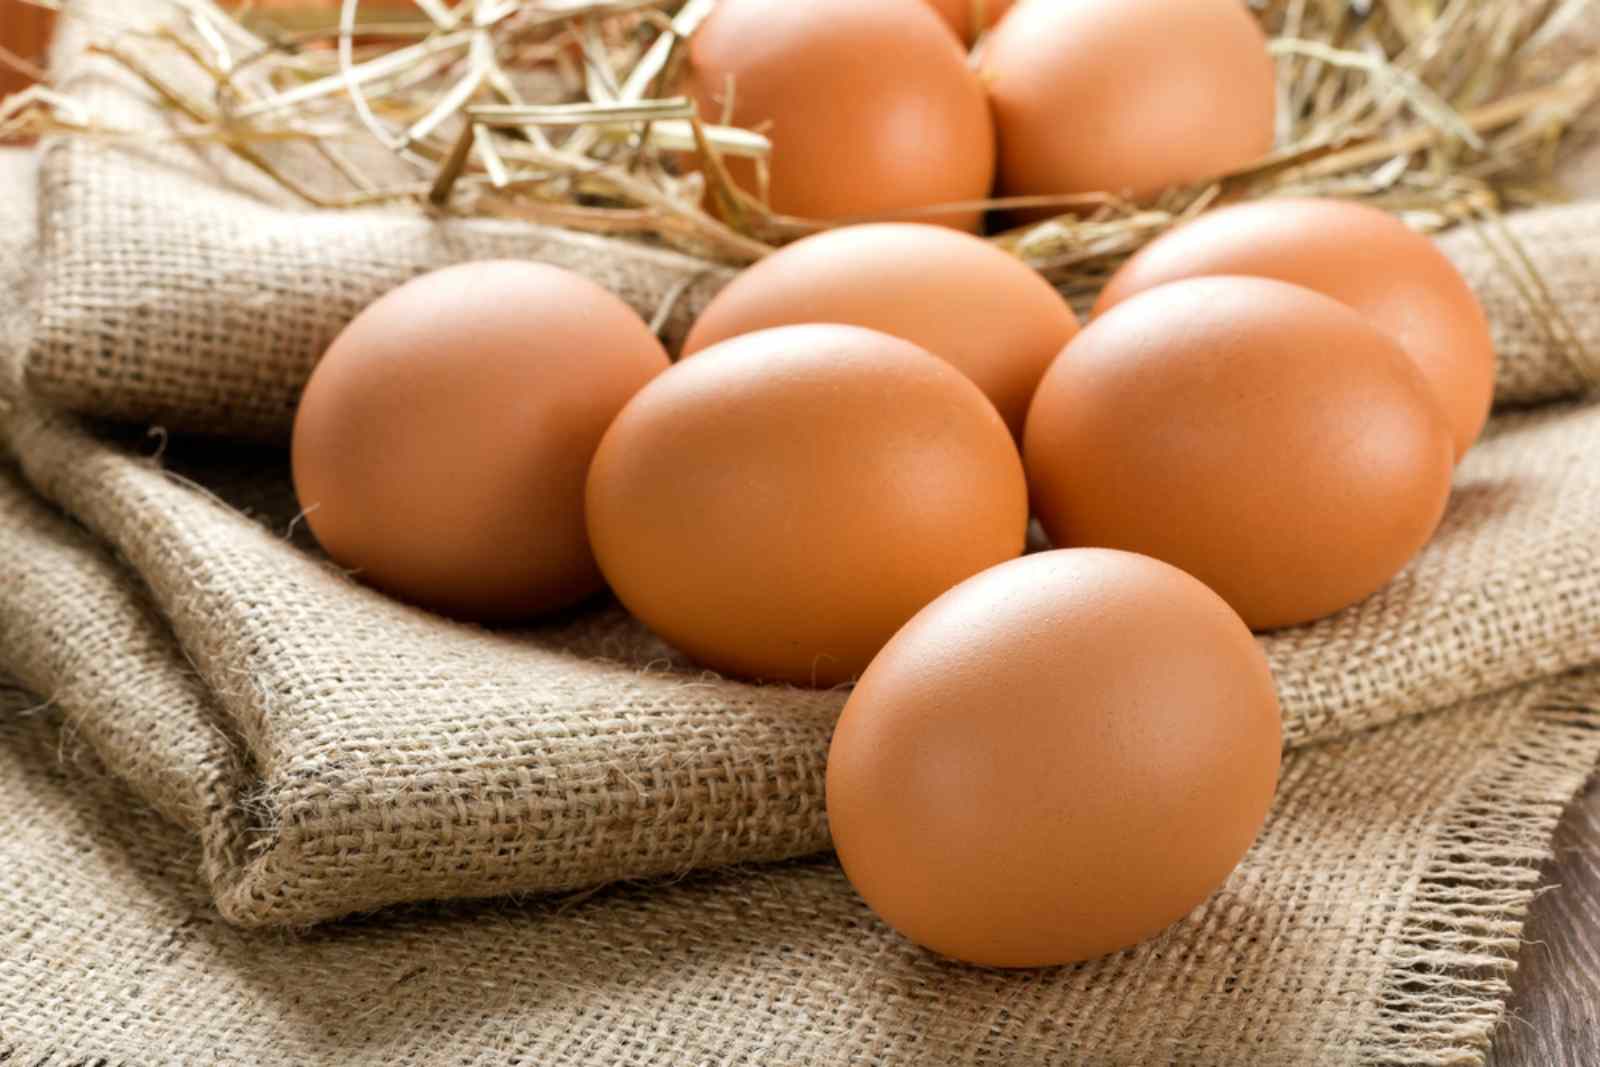 Ăn trứng gà giúp tăng cường sức đề kháng, giải cảm hiệu quả